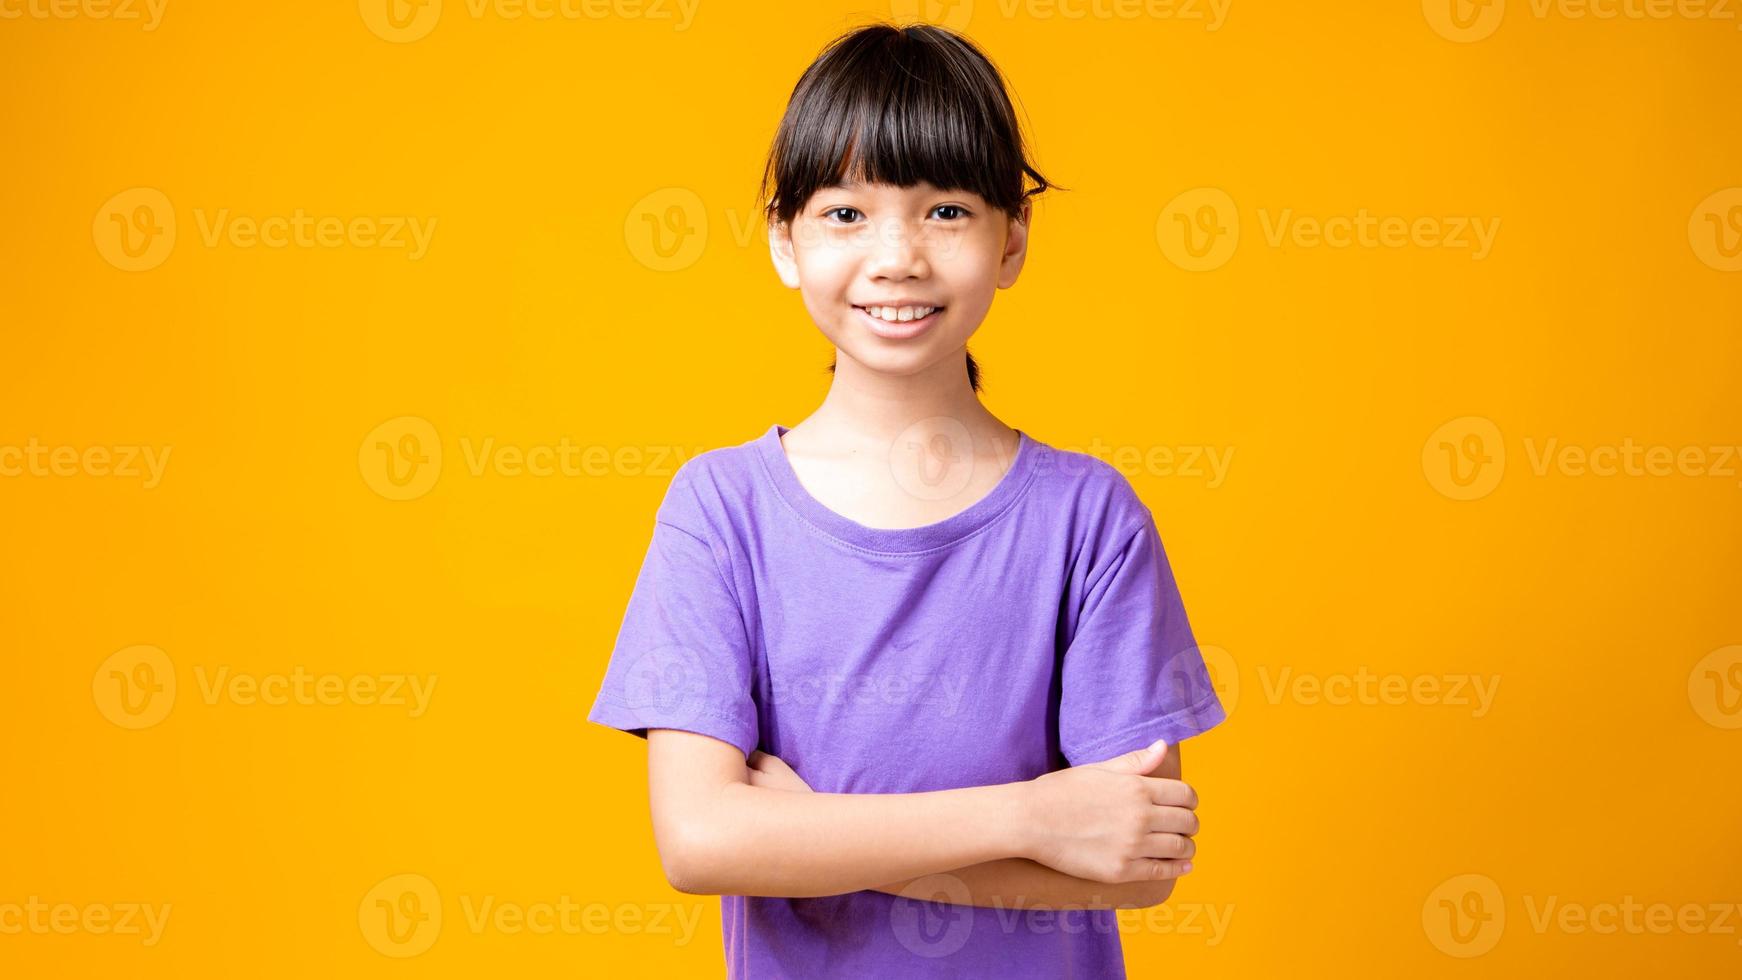 jong Aziatisch meisje in paars shirt lachend met armen gekruist in studio met gele achtergrond foto